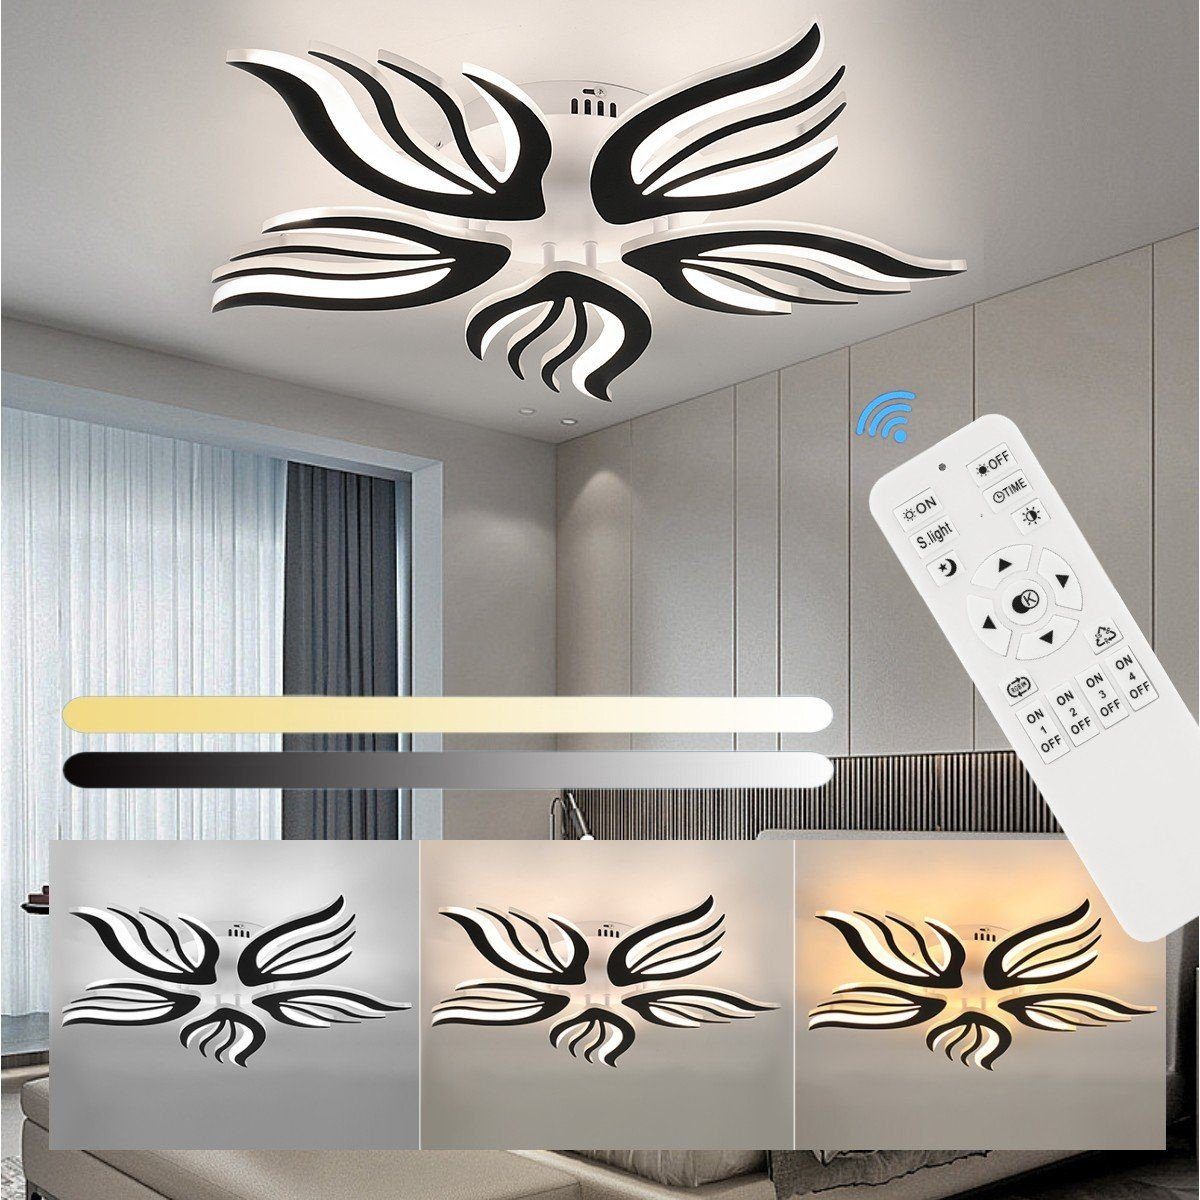 LETGOSPT LED Deckenleuchte Moderne LED Deckenleuchte Dimmbar 32W Wohnzimmerlampe Deckenlampe, LED fest integriert, Kaltweiß/Naturweiß/Warmweiß, mit Fernbedienung Lichtfarbe Farbwechsel Deckenbeleuchtung Lampe